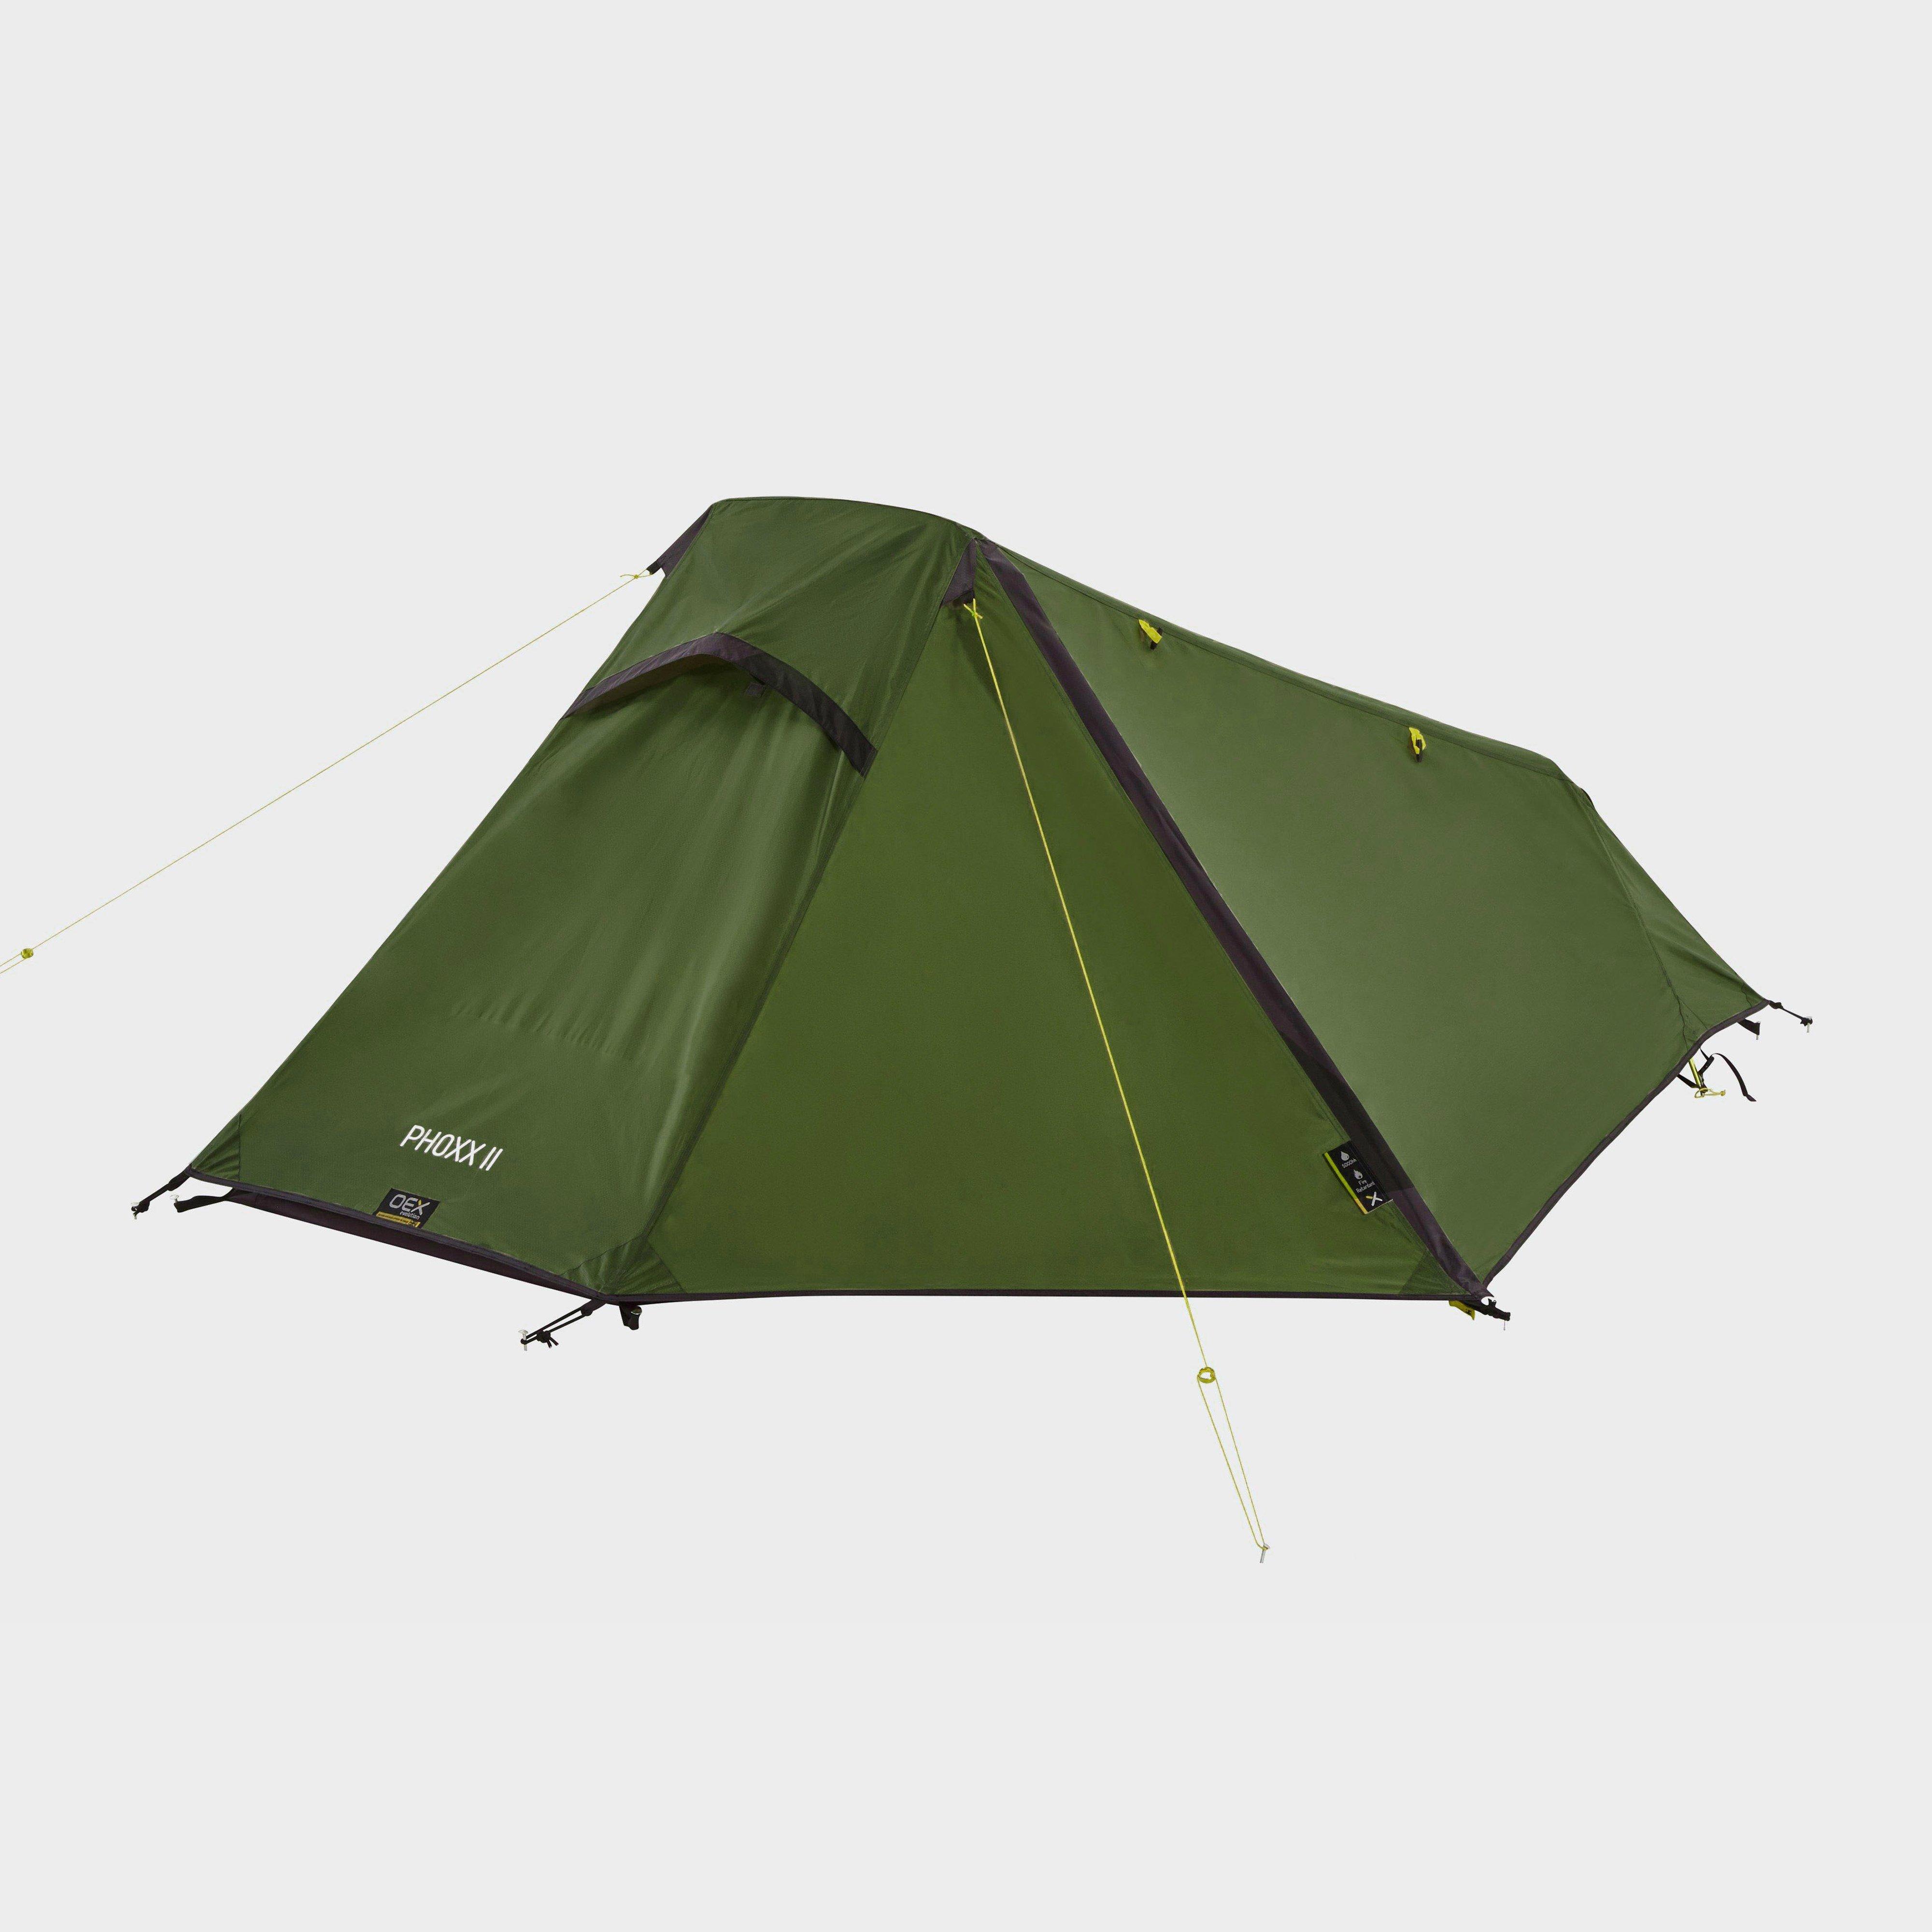 Oex Phoxx 1 Ii Tent - Green/olv  Green/olv